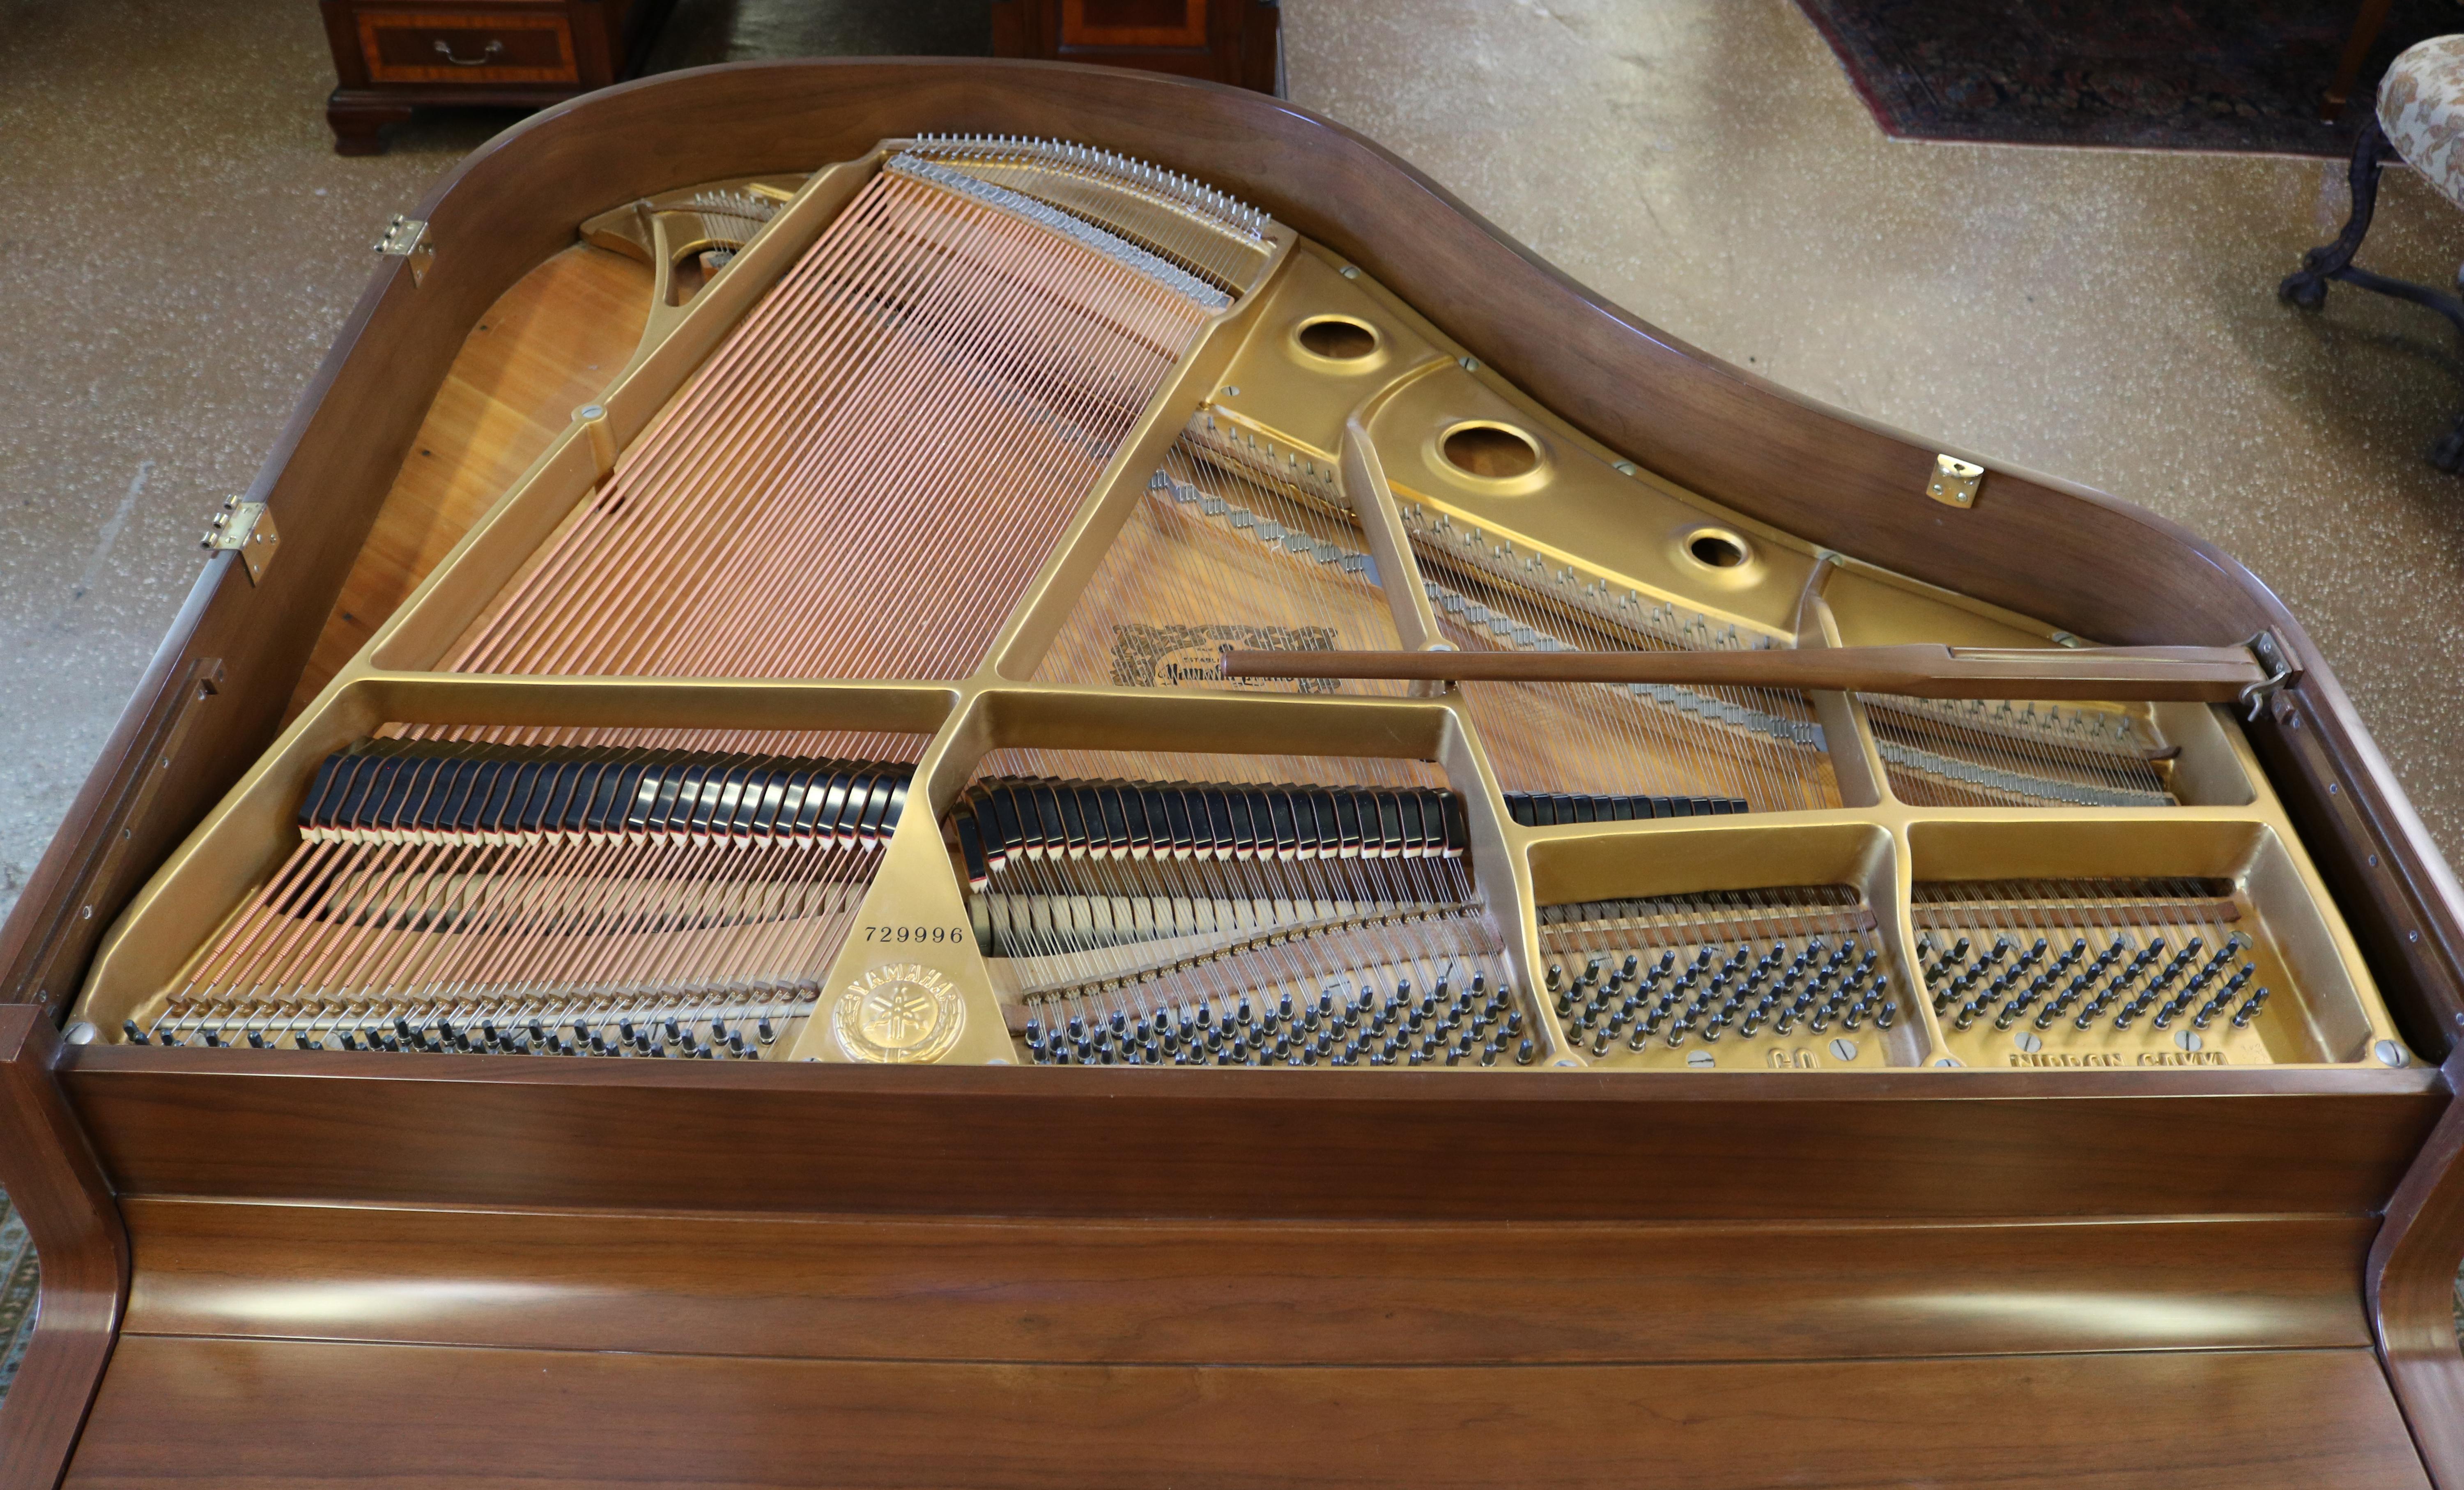 Magnifique piano à queue Yamaha G0 en noyer de 1968, excellente table d'harmonie

Dimensions : 4'7